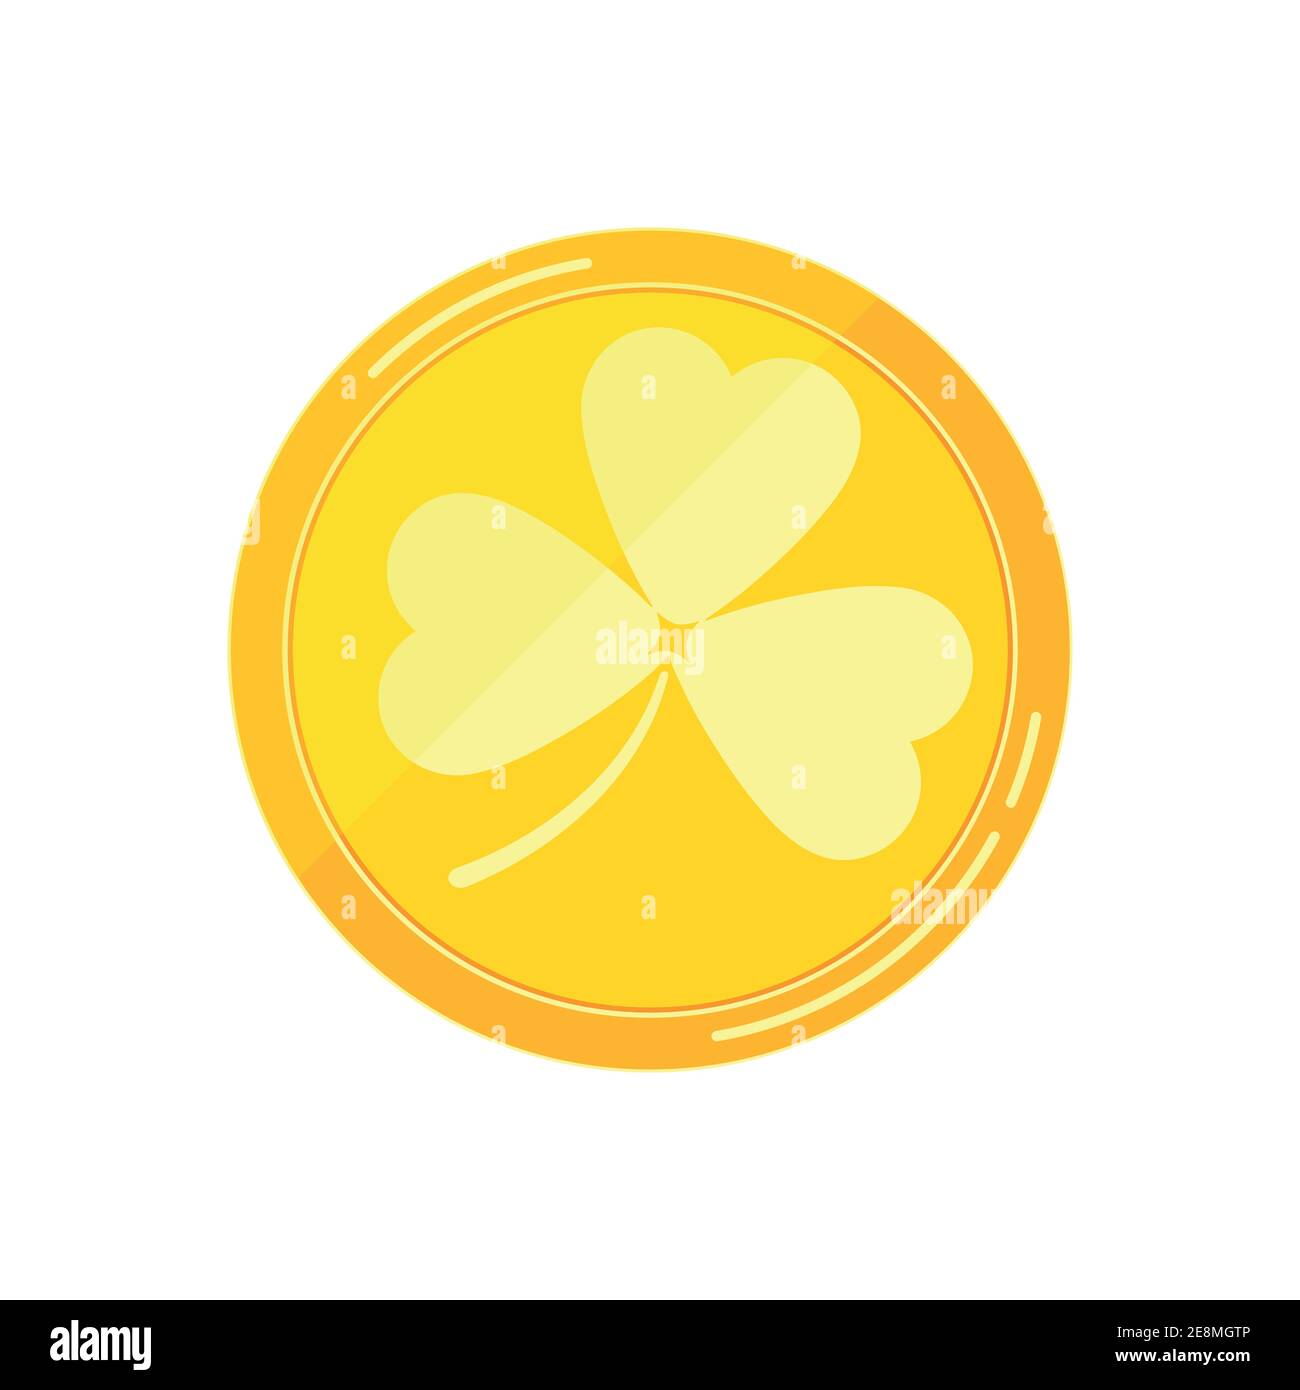 Pièce de monnaie dorée avec trèfle shamrock vecteur plat icône isolée sur fond blanc. Argent d'or avec trèfle de feuilles d'arbre - élément pour le jour de Saint Patrick Illustration de Vecteur